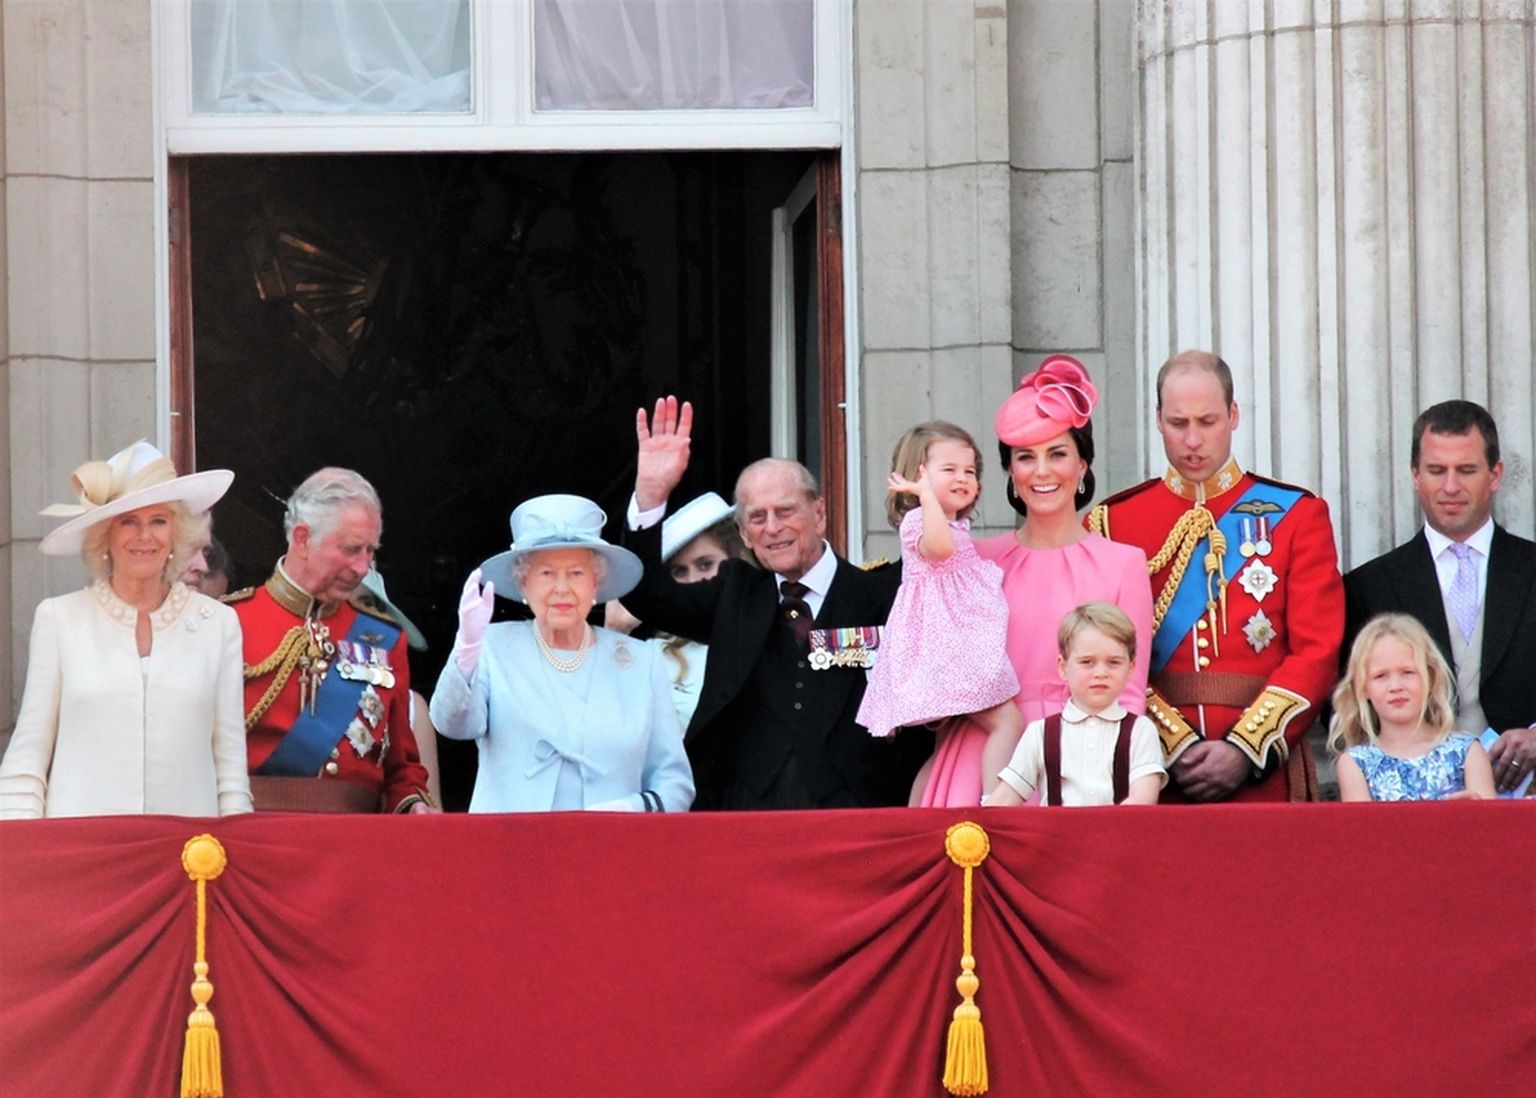 Briti kuninglik perekond 2017. aastal.